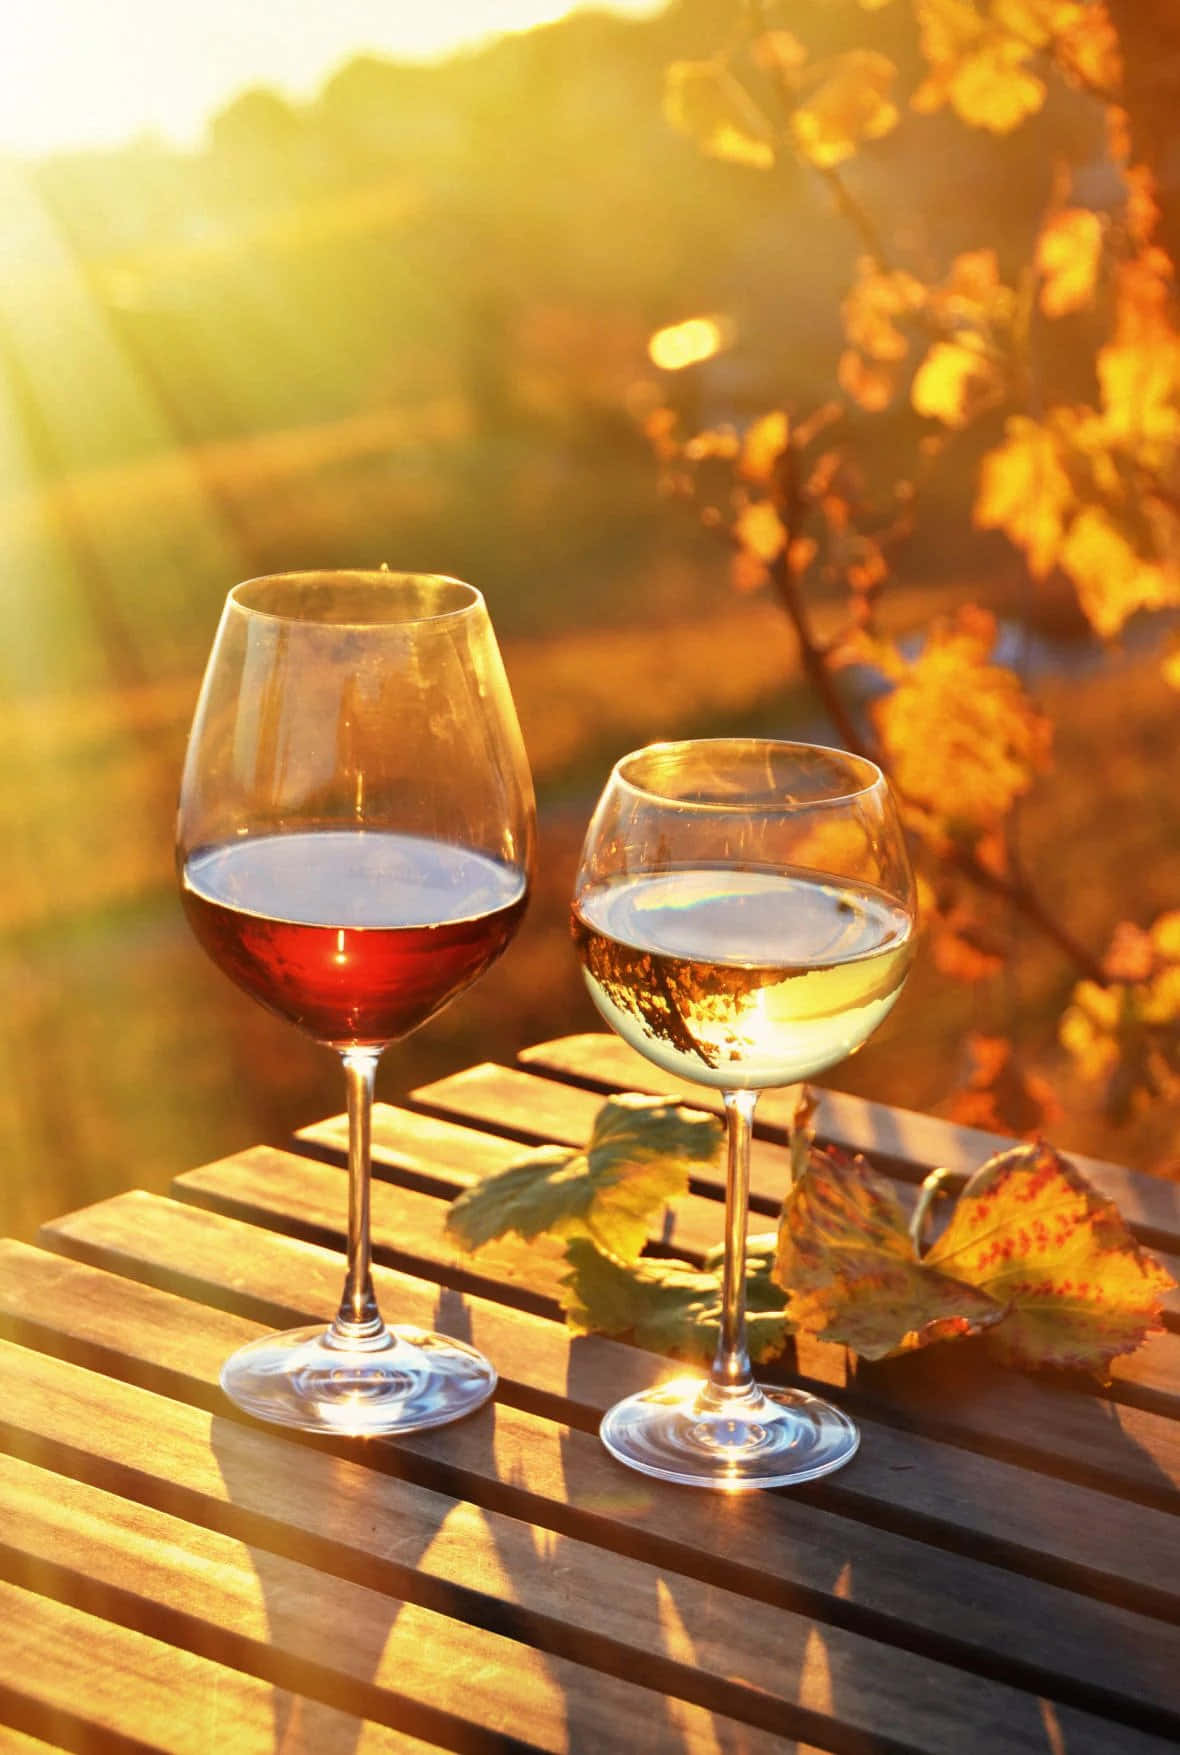 Einglas Wein - Der Perfekte Weg, Um Nach Einem Langen Tag Abzuschalten.